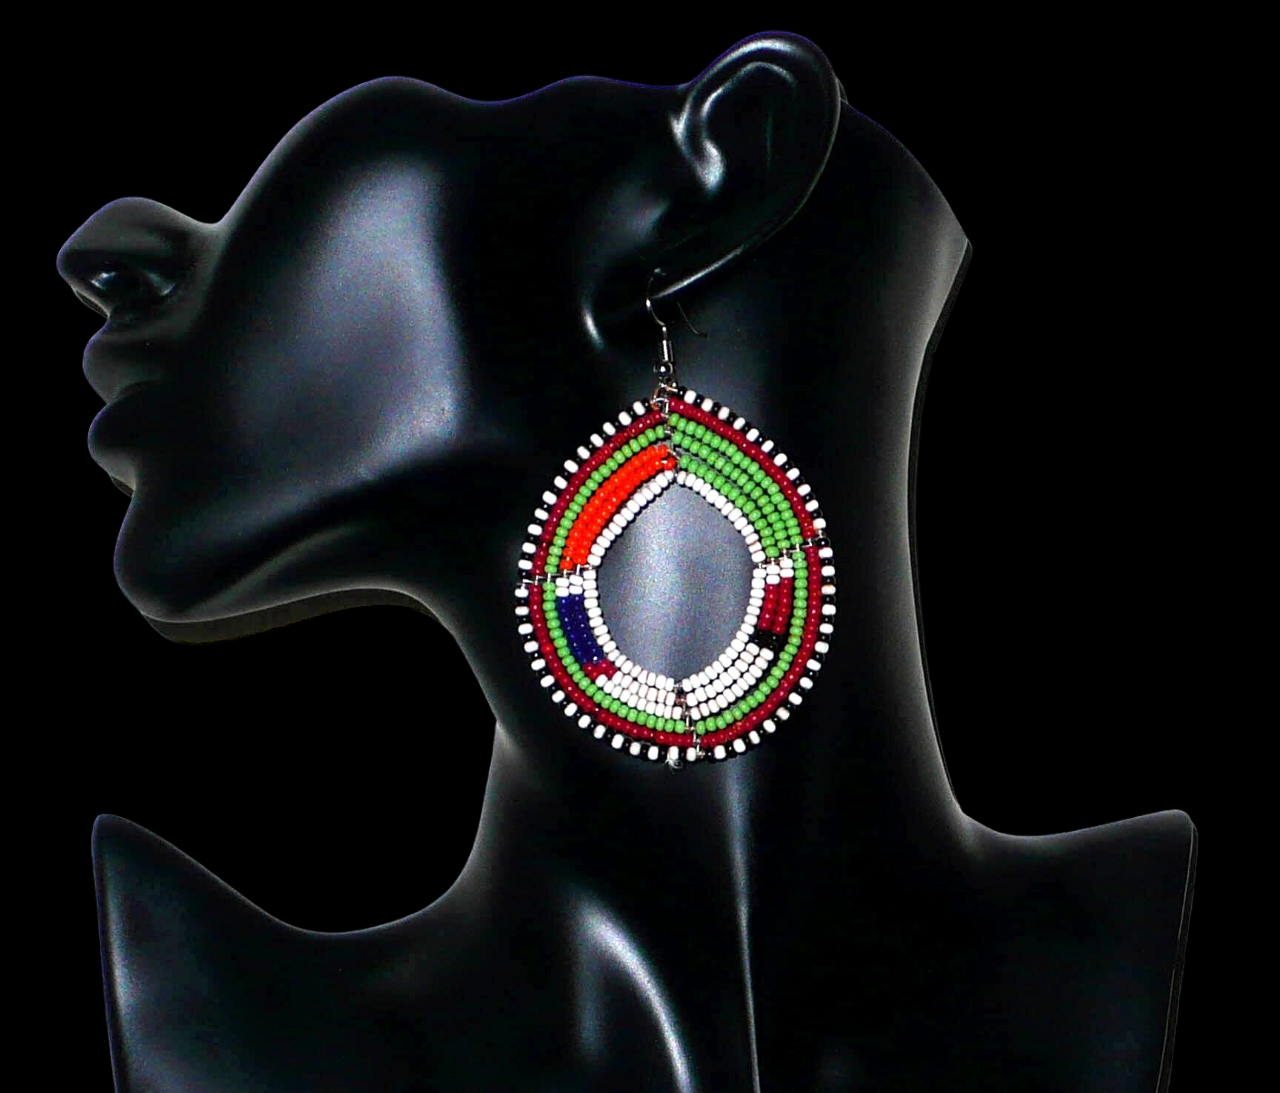 Longues boucles d'oreilles africaines Massai faites de perles de rocaille vertes, blanches, orange, rouges, bleu foncé et noires fixées sur six rangées de fils de fer montés en cercles. Elles mesurent 8 cm de long et 5,5 cm de larges et se portent avec des crochets en acier inoxydable sur des oreilles percées. Timeless Fineries